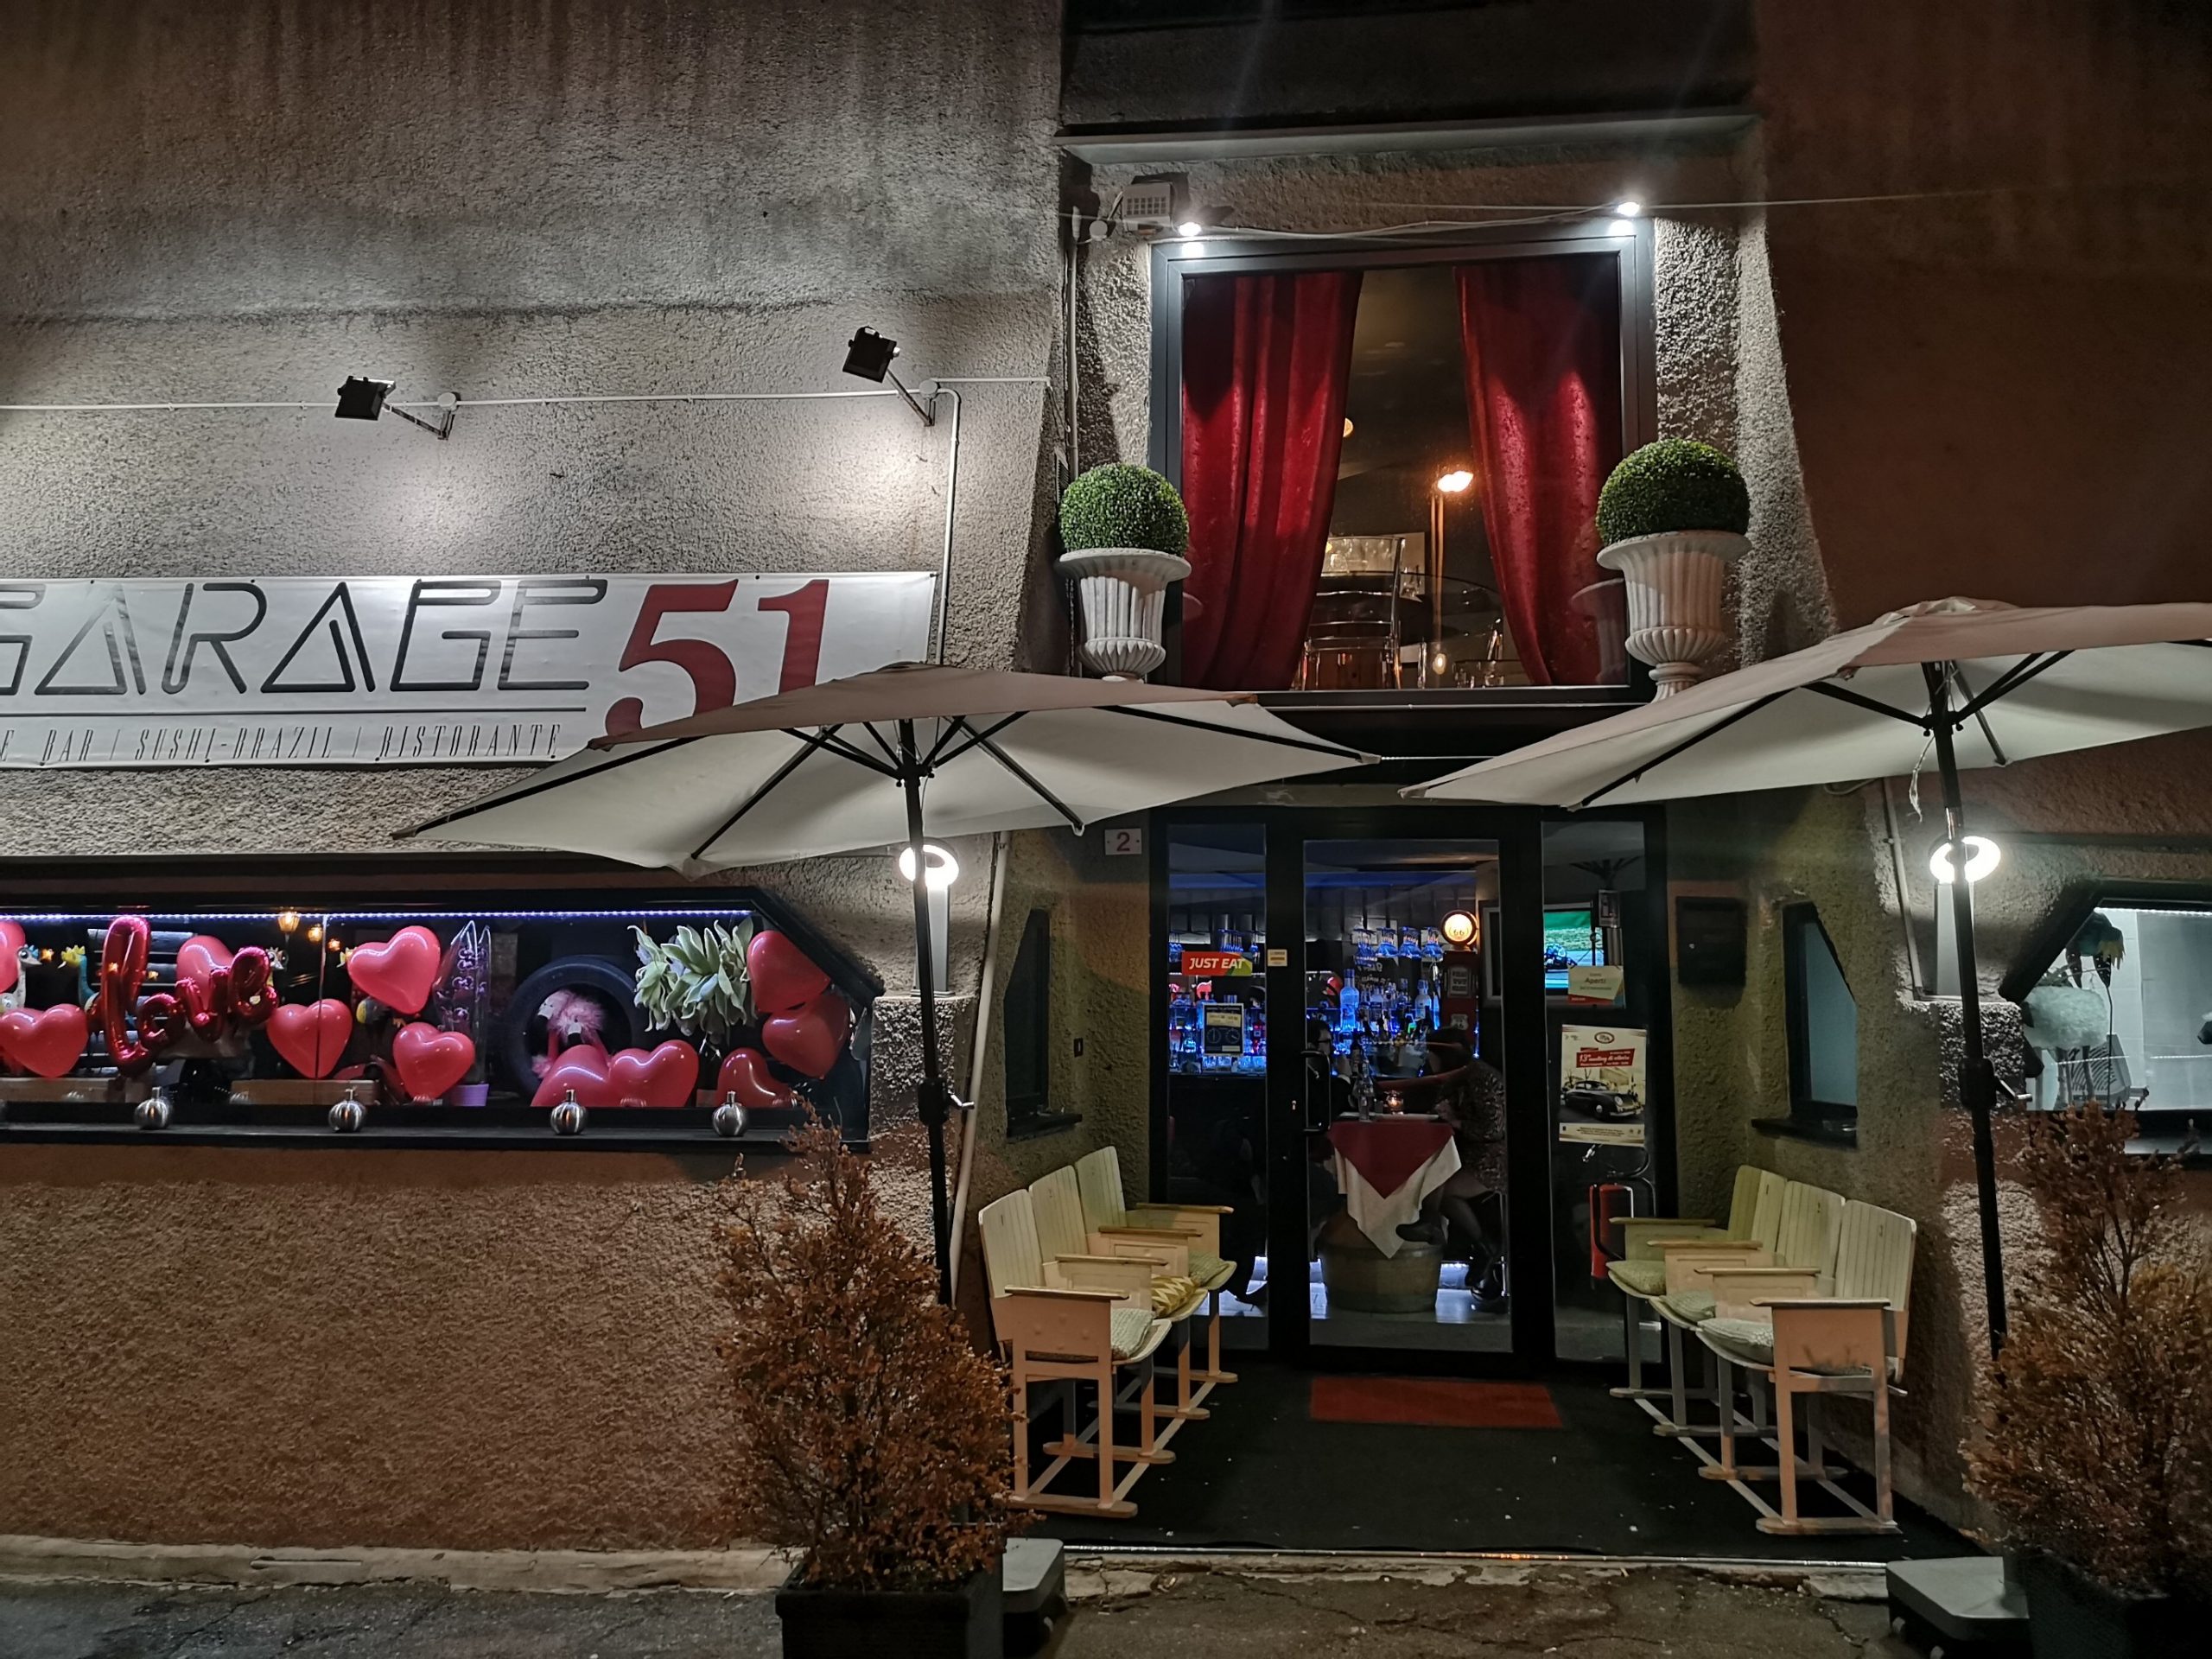 Garage 51, Sushi Brasiliano ad Albaro ed è subito Festa!